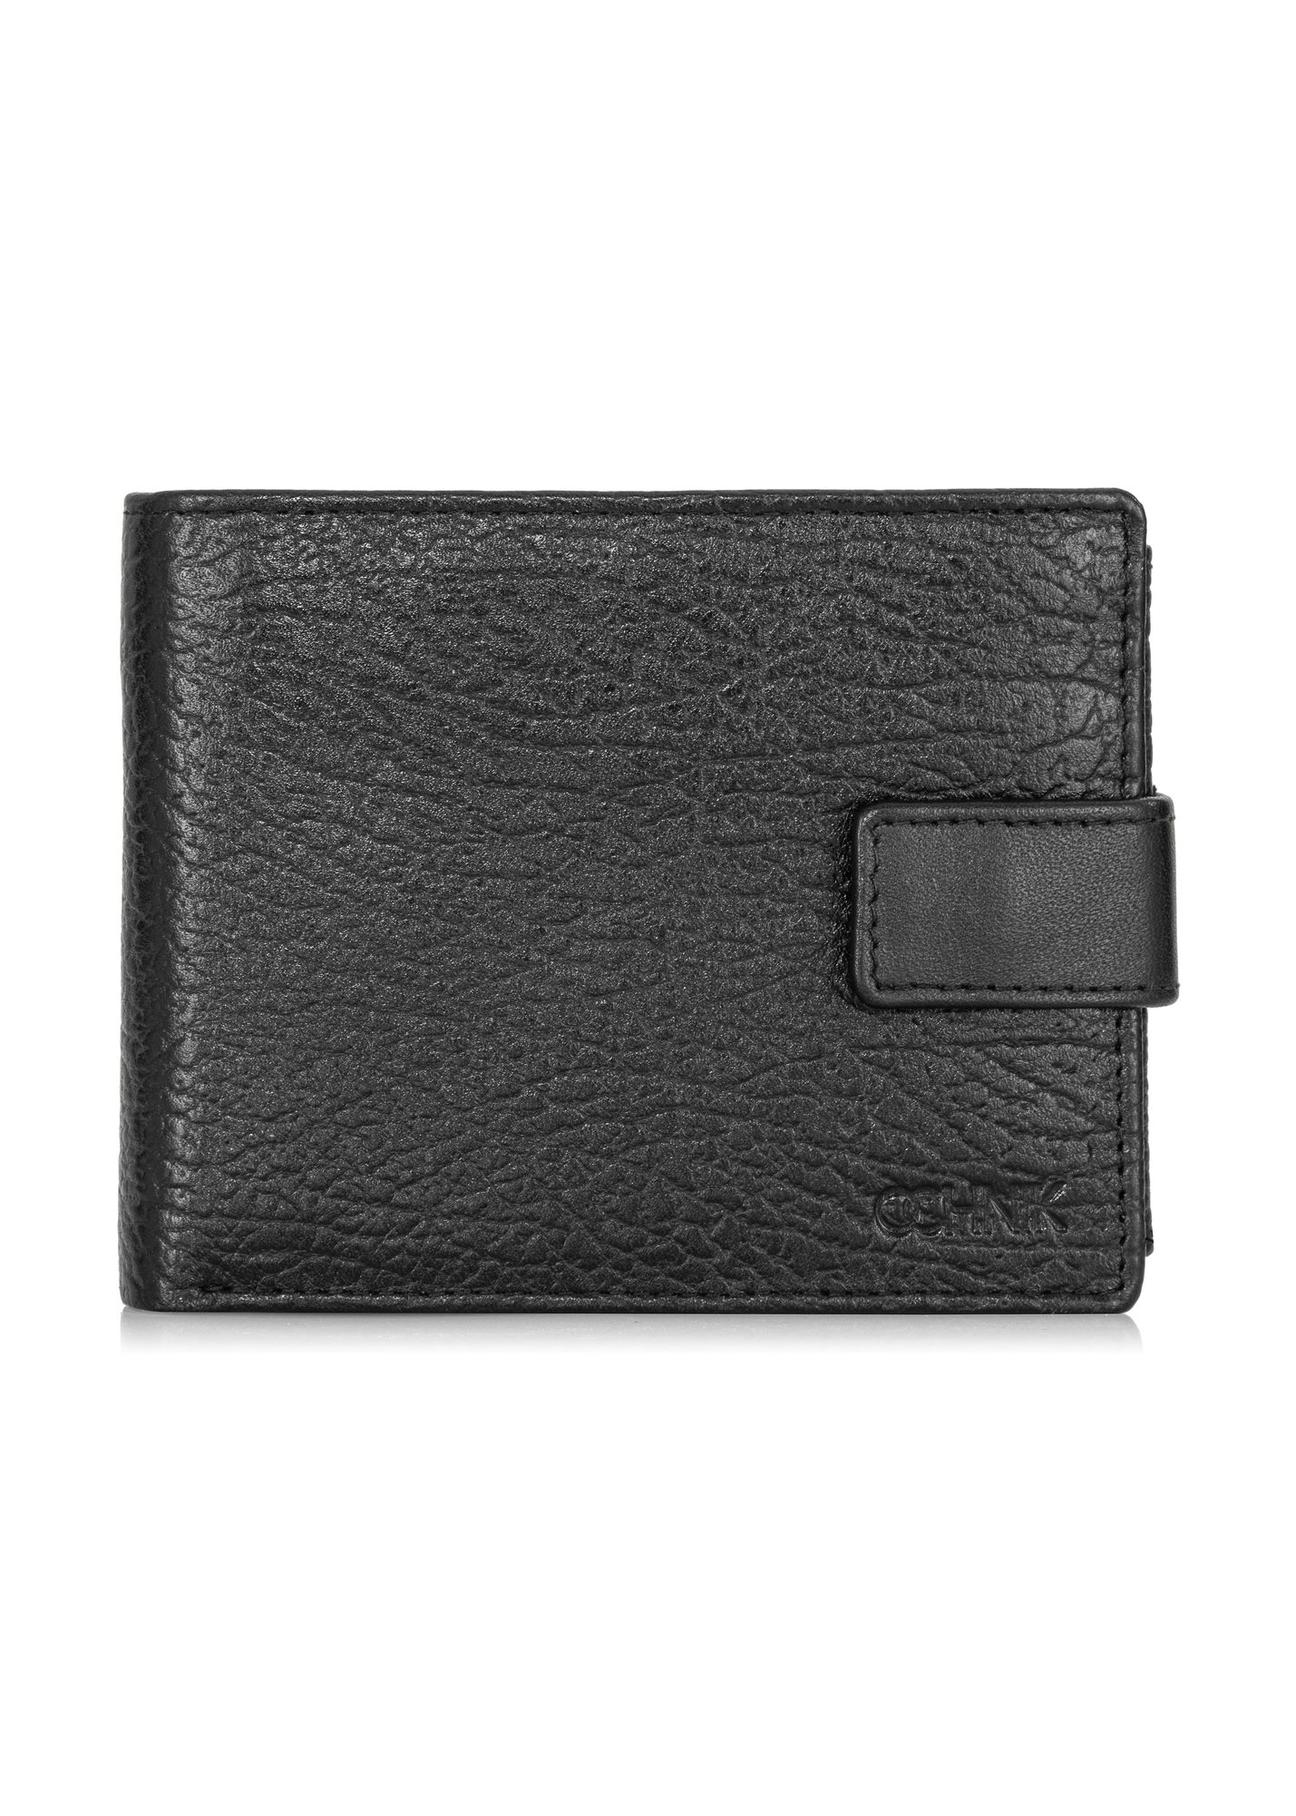 Skórzany portfel męski na zatrzask PORMS-0536-99(W24)